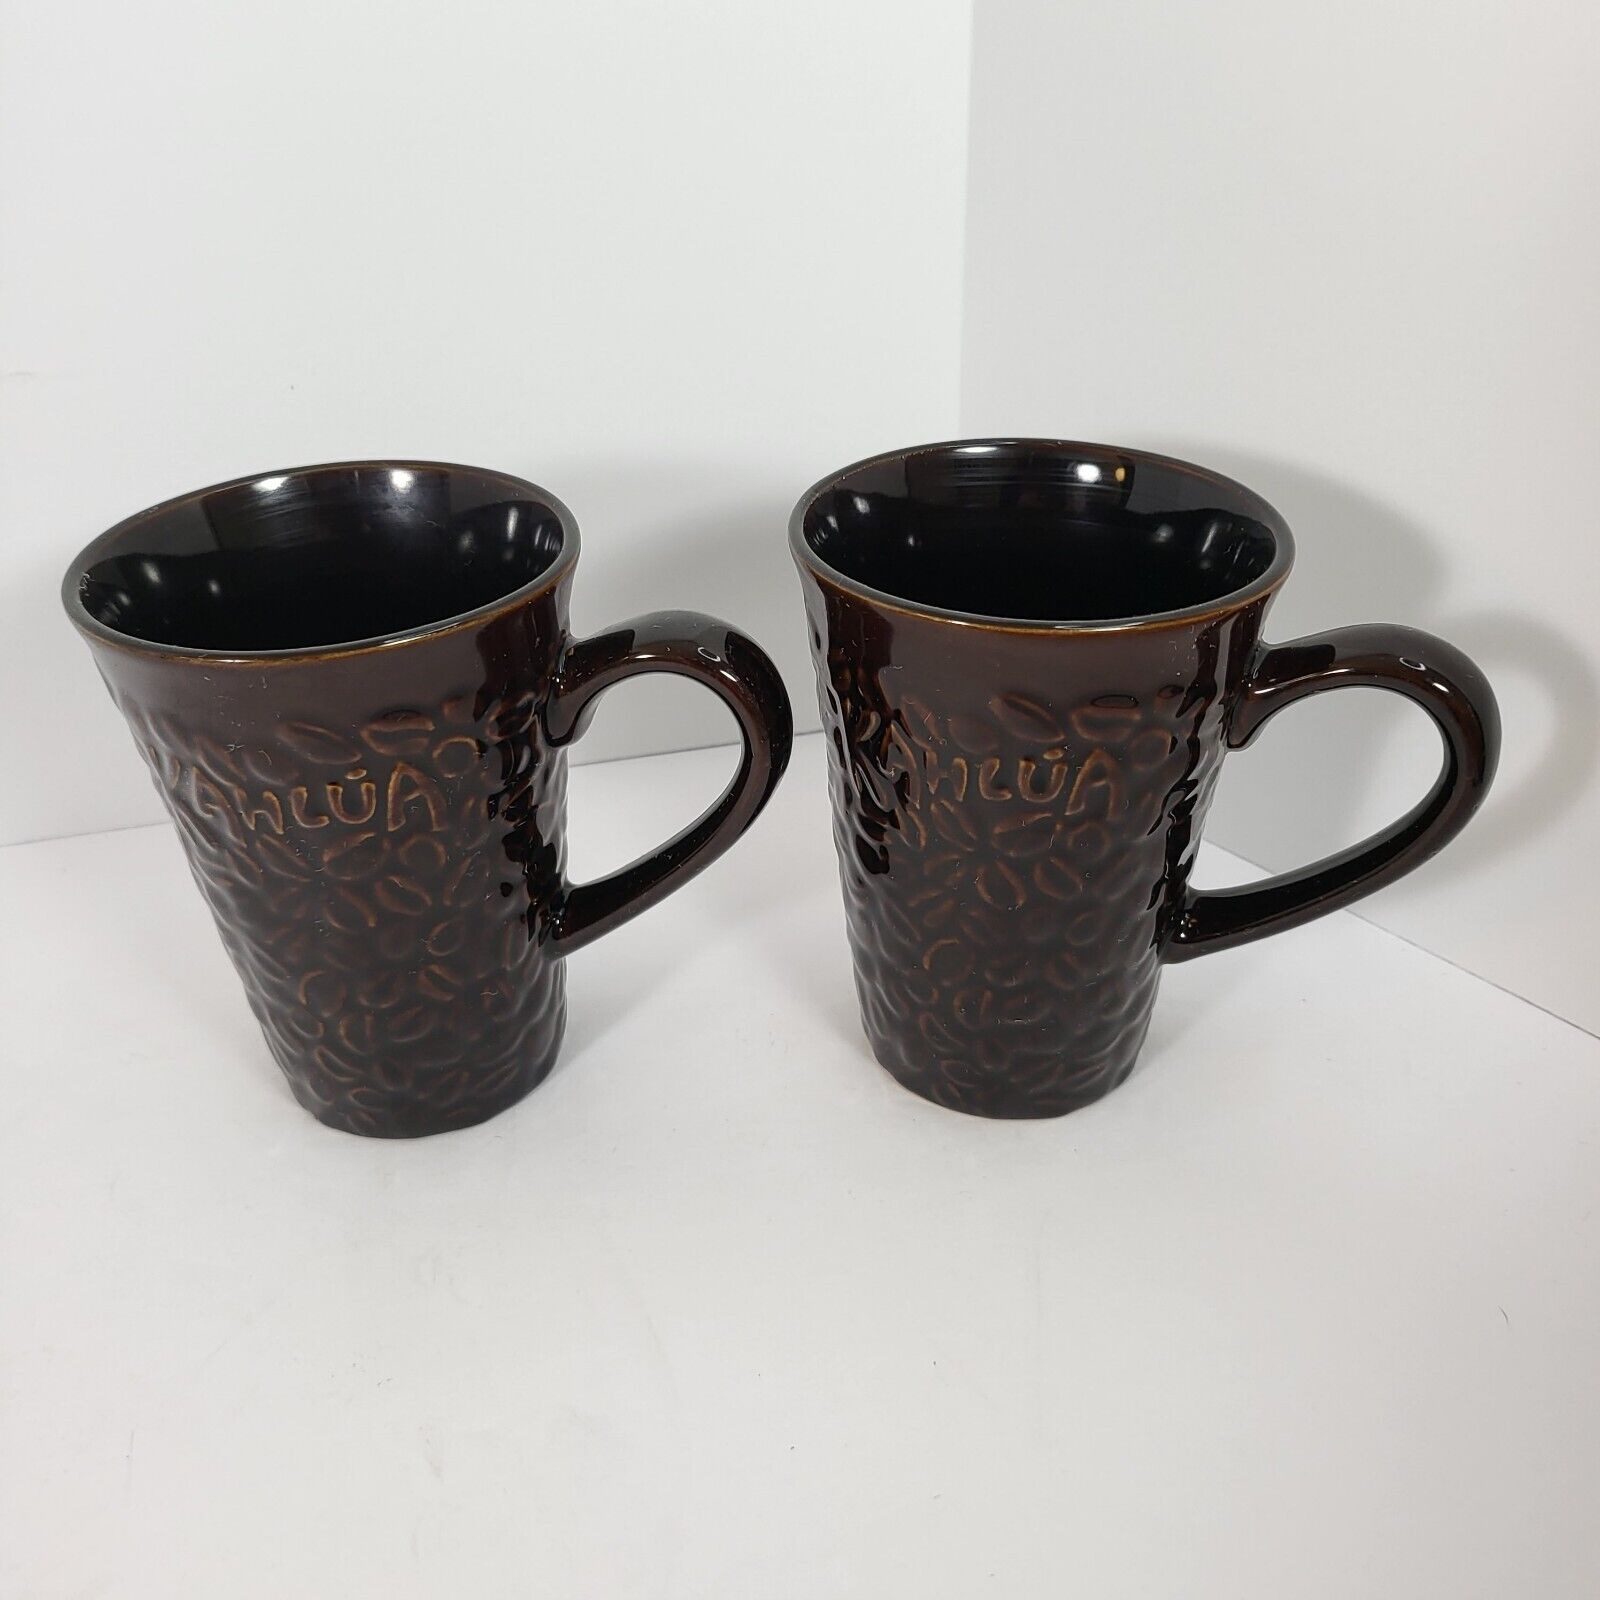 Kahlua Coffee Cup Mug Set of 2 Brown Embossed Raised Lettering Coffee Bean